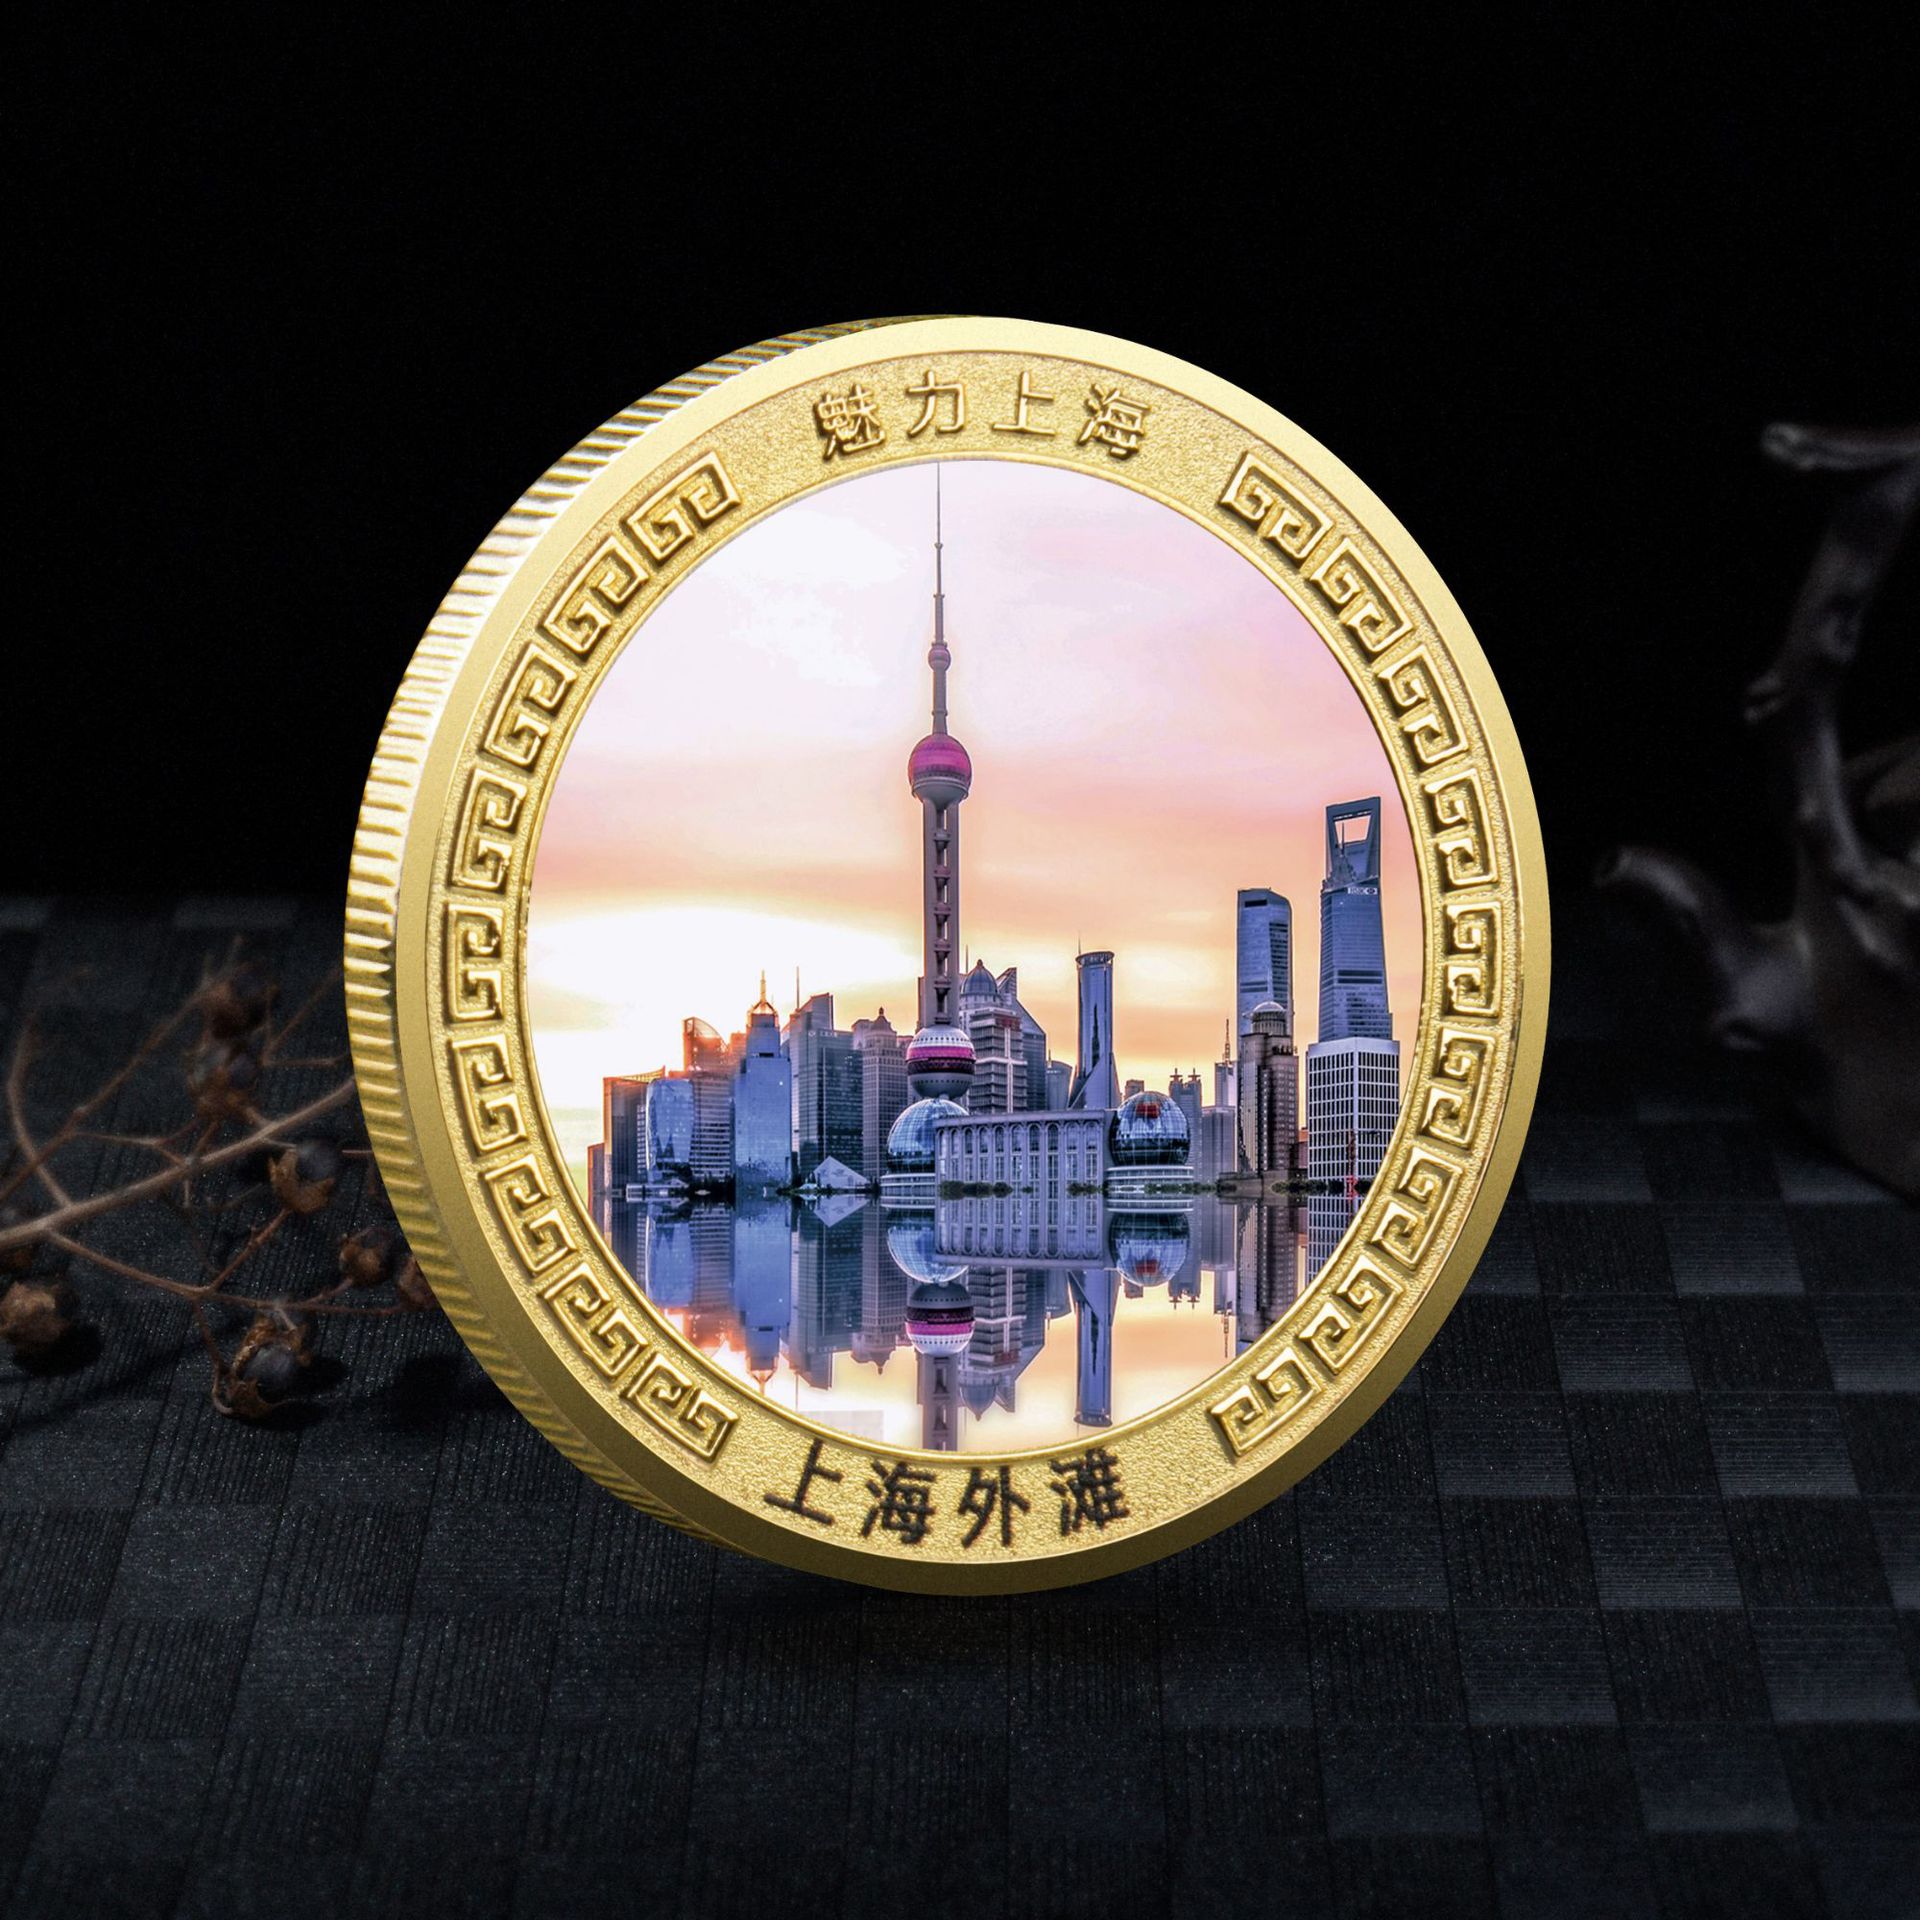 上海外滩纪念金币东方明珠纪念品城市地标打卡纪念旅游景区小礼品